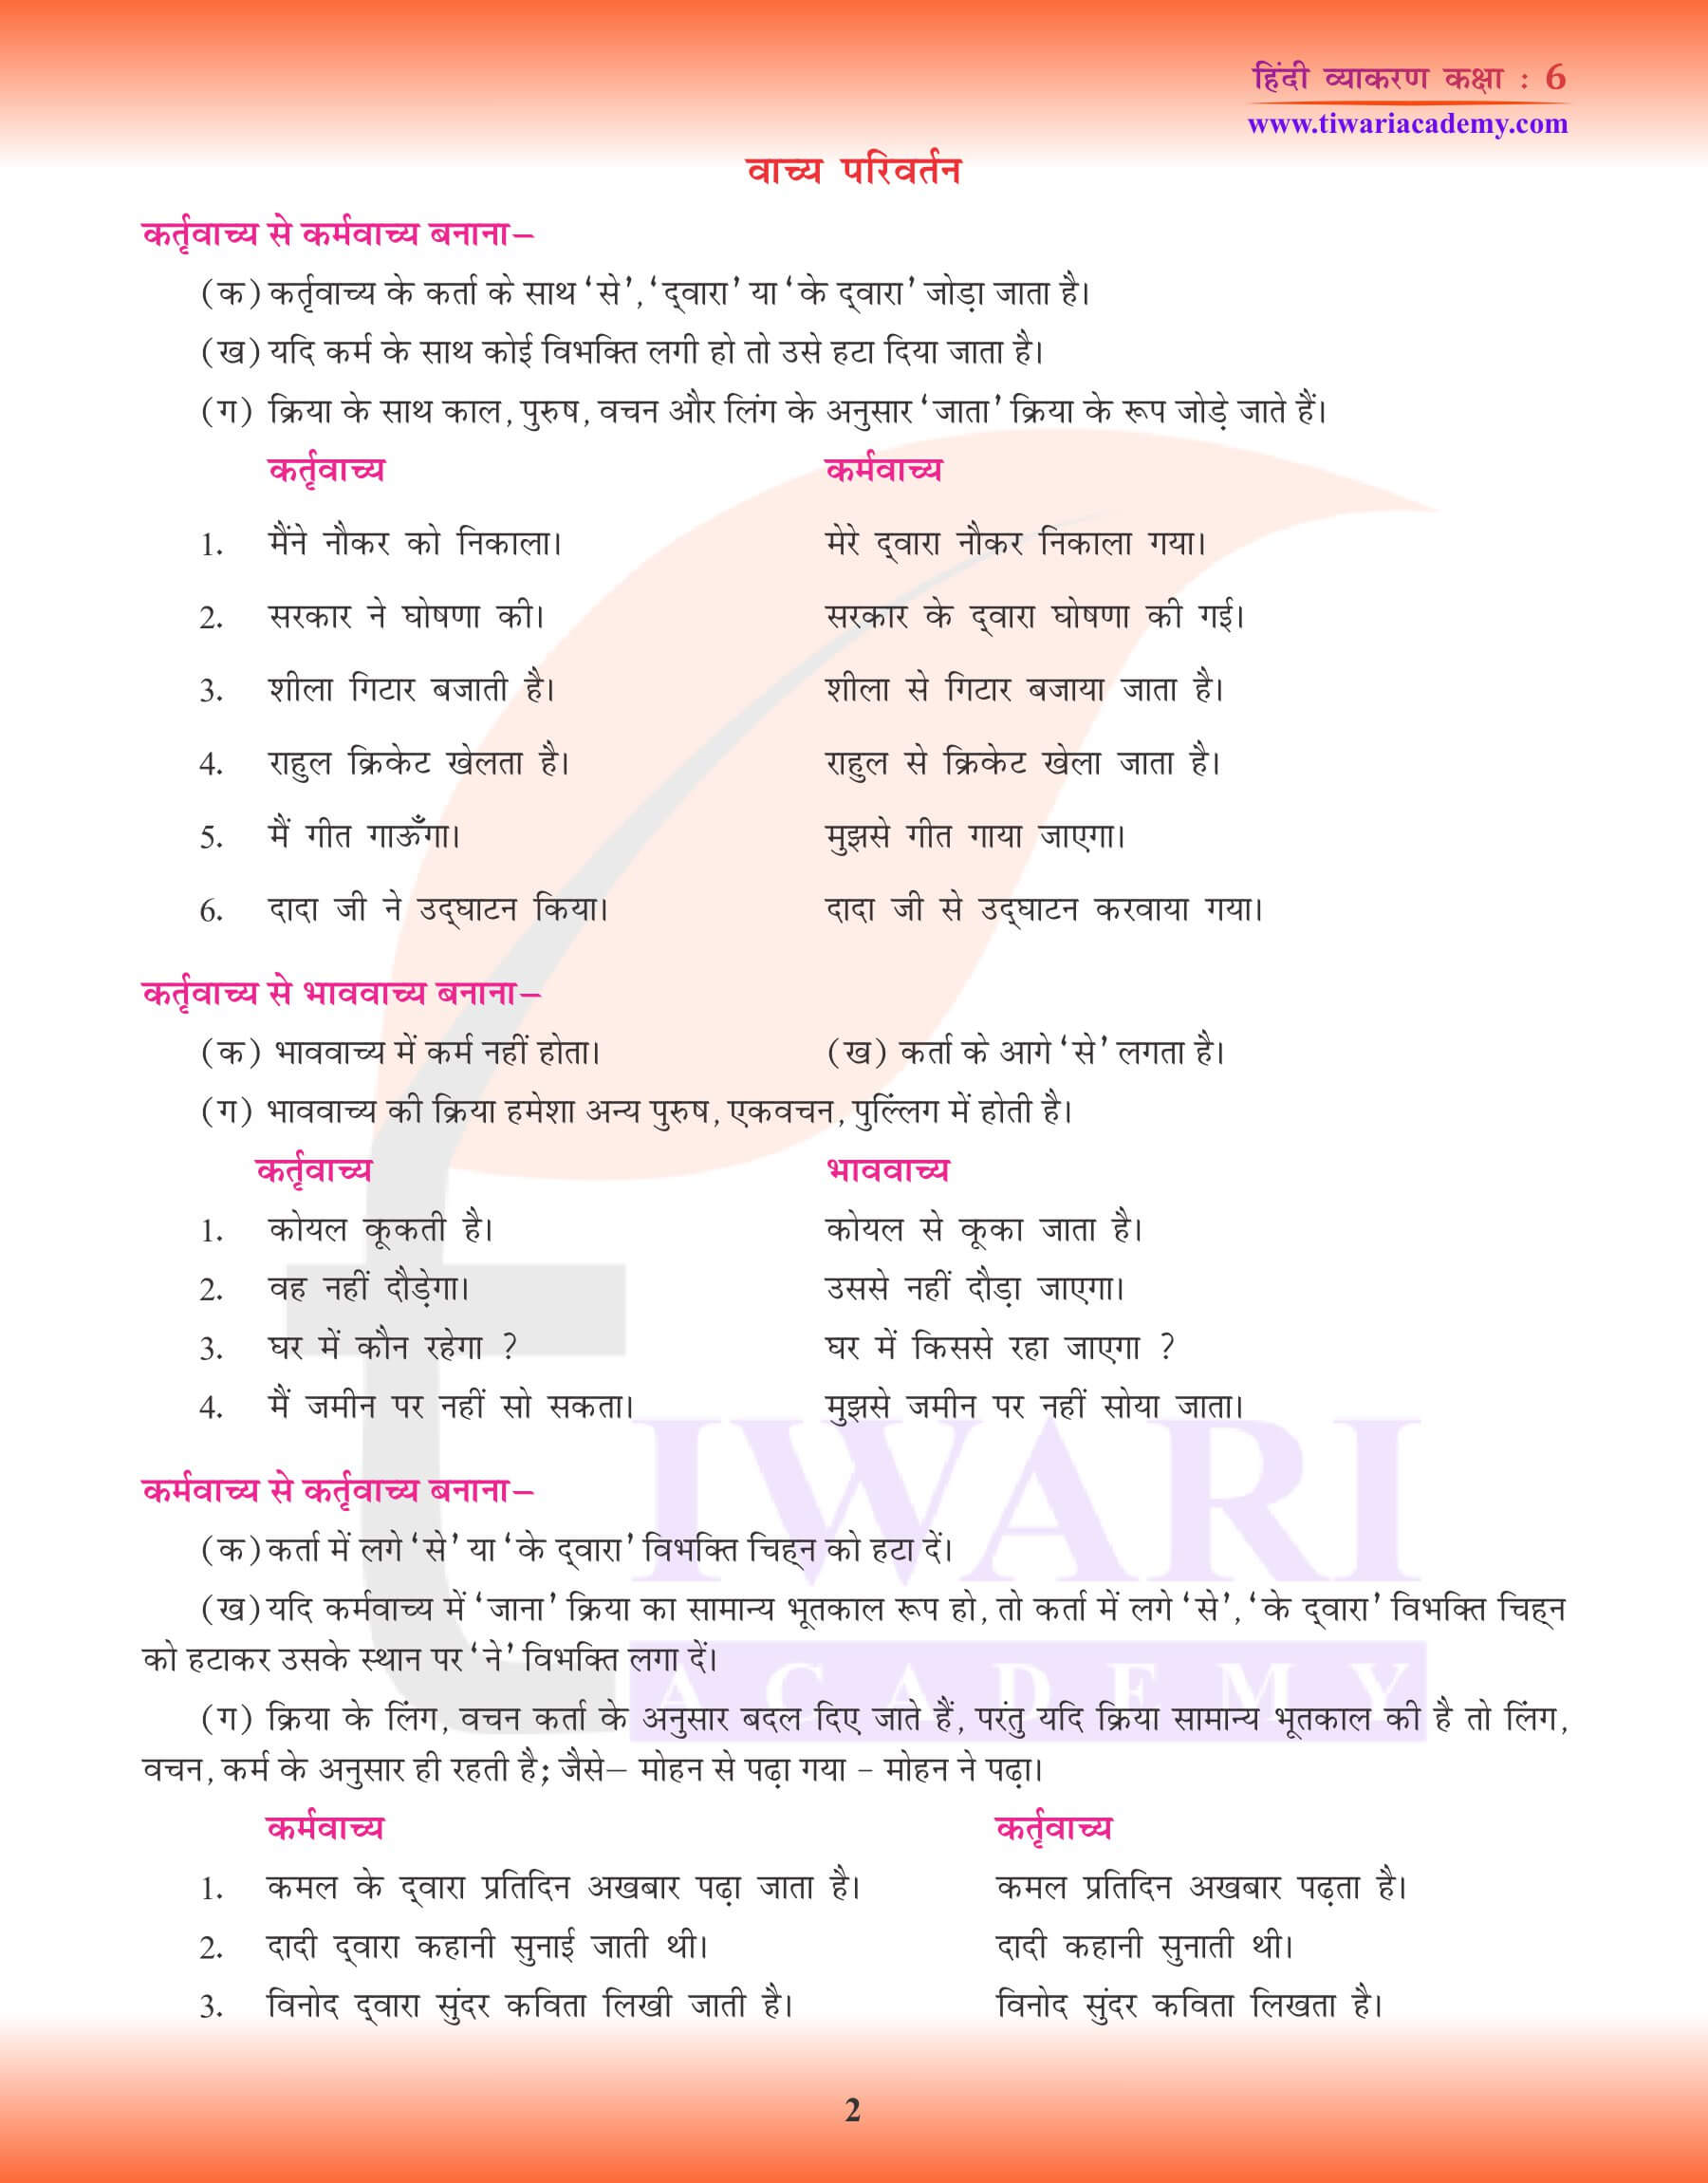 कक्षा 6 हिंदी व्याकरण वाच्य